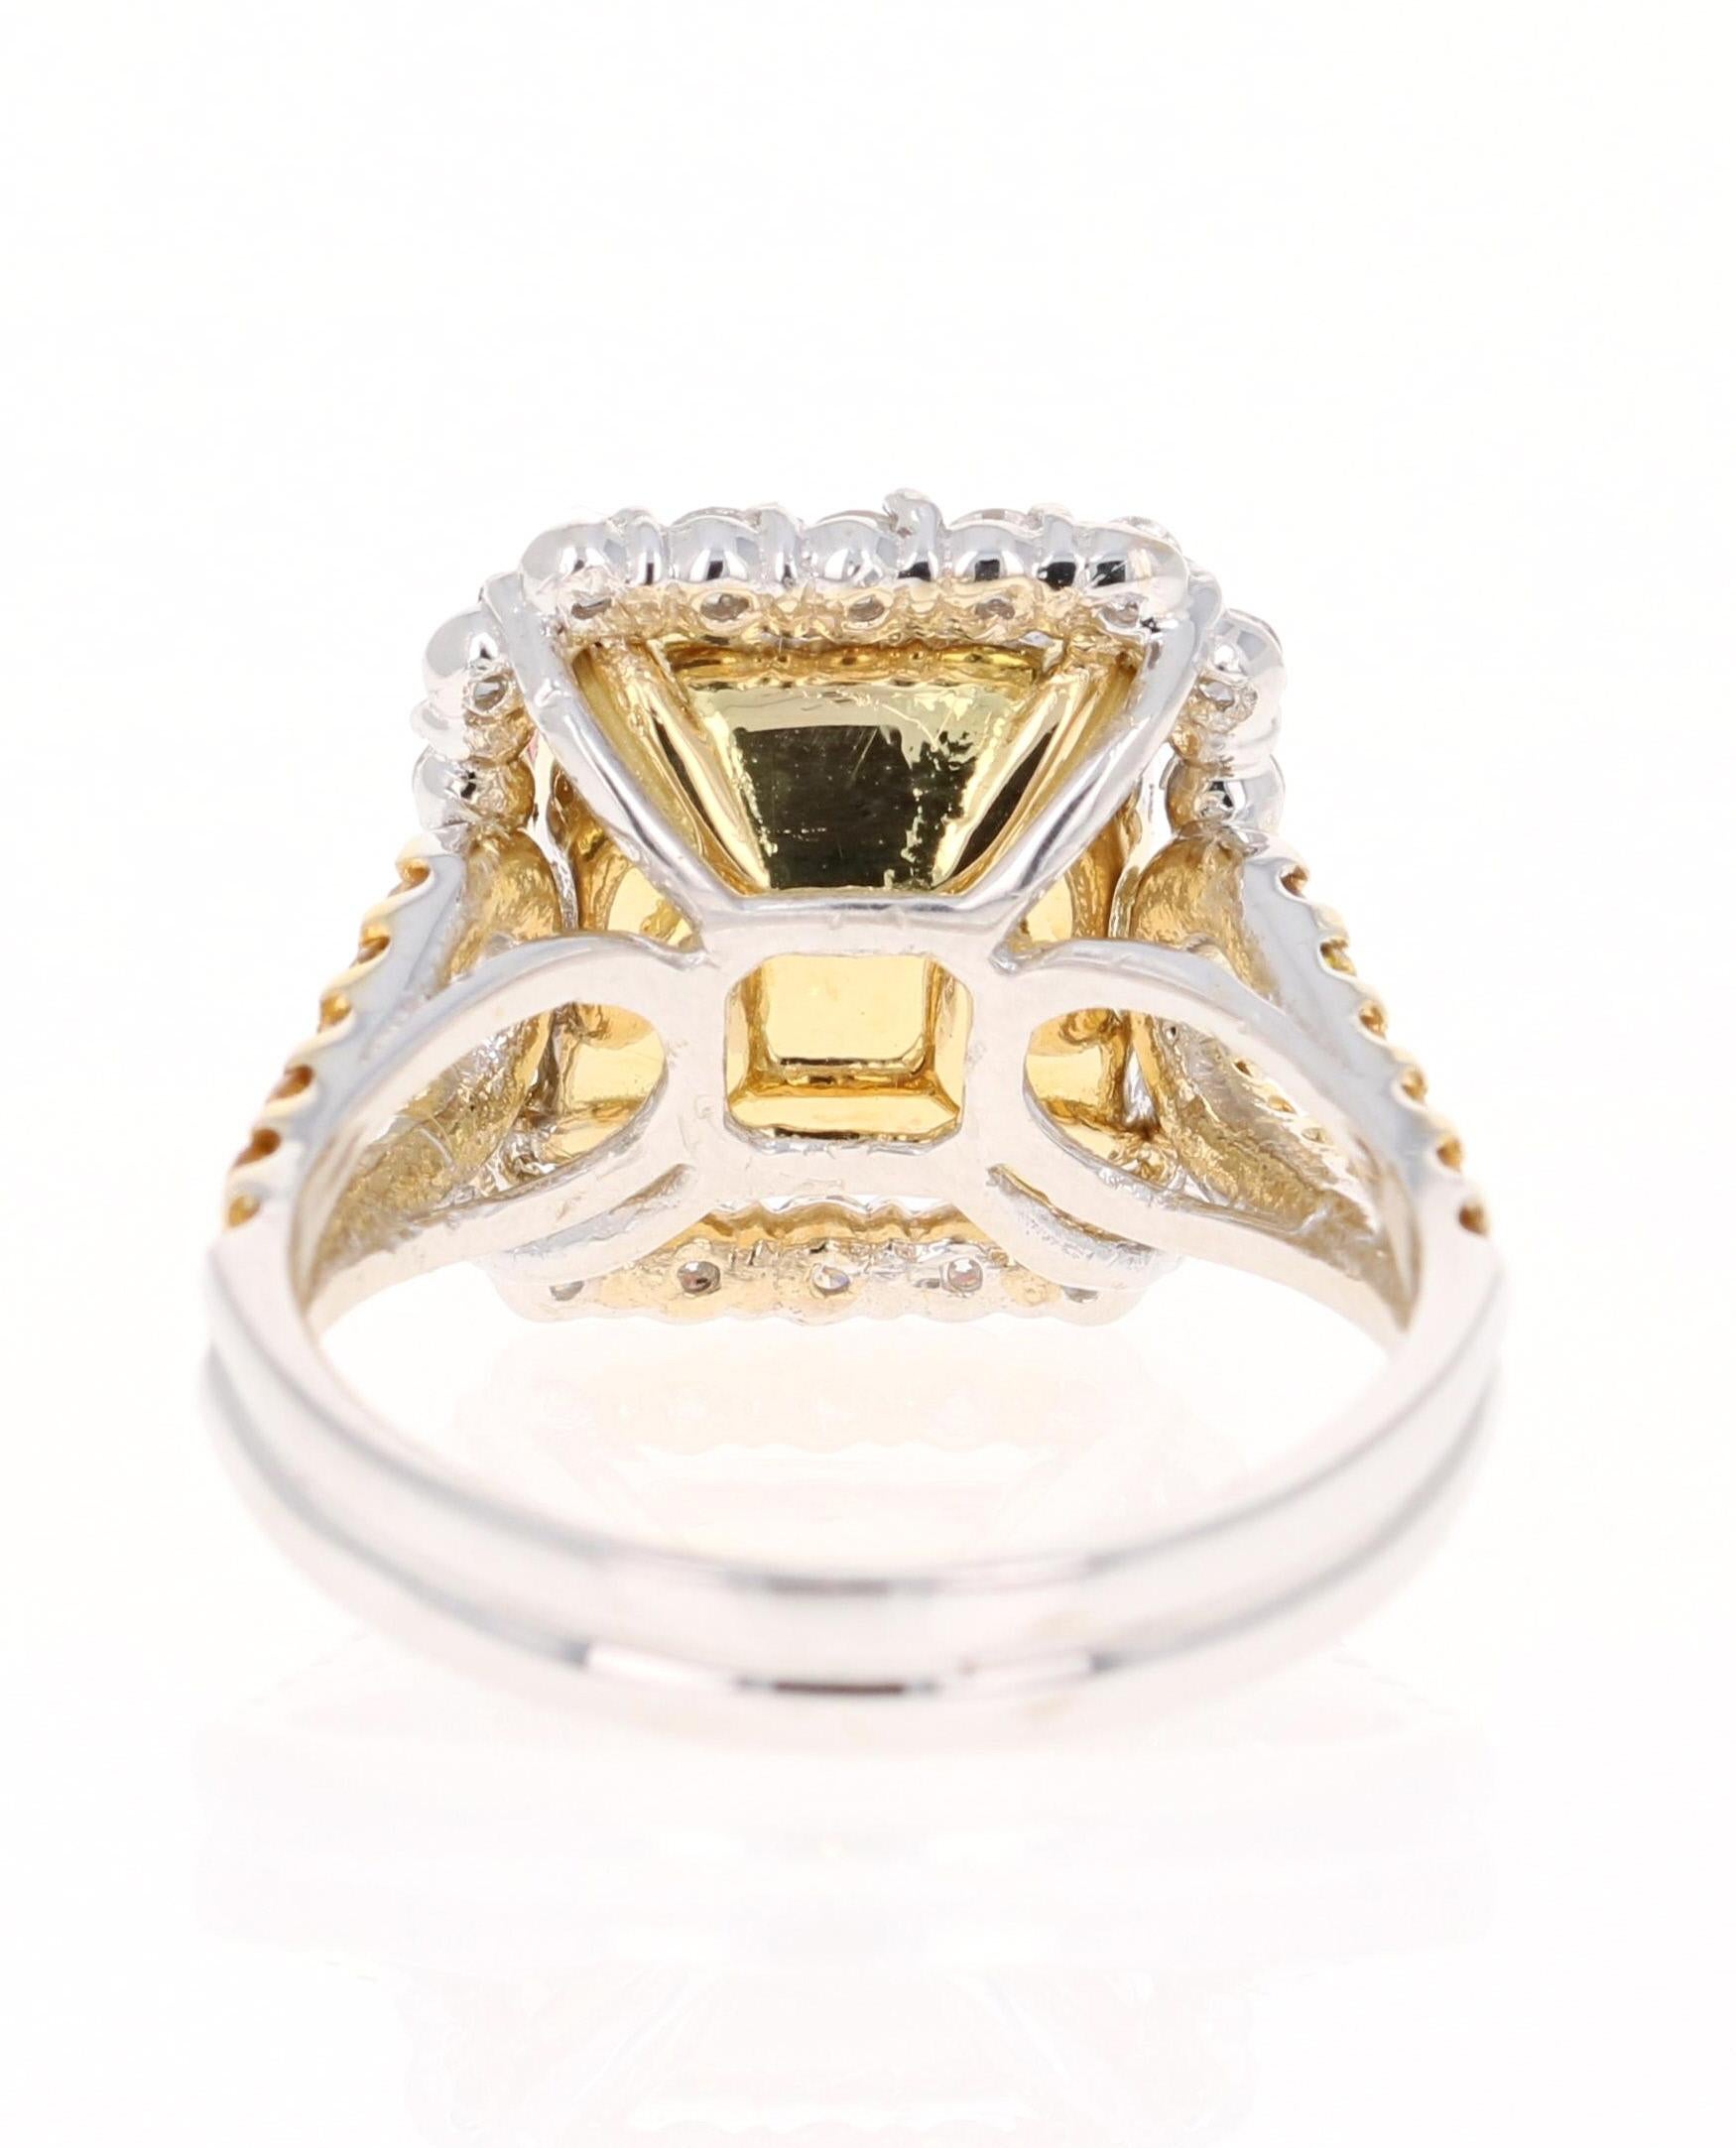 Cushion Cut 5.70 Carat Tourmaline Yellow Diamond 18 Karat White Gold Engagement Ring